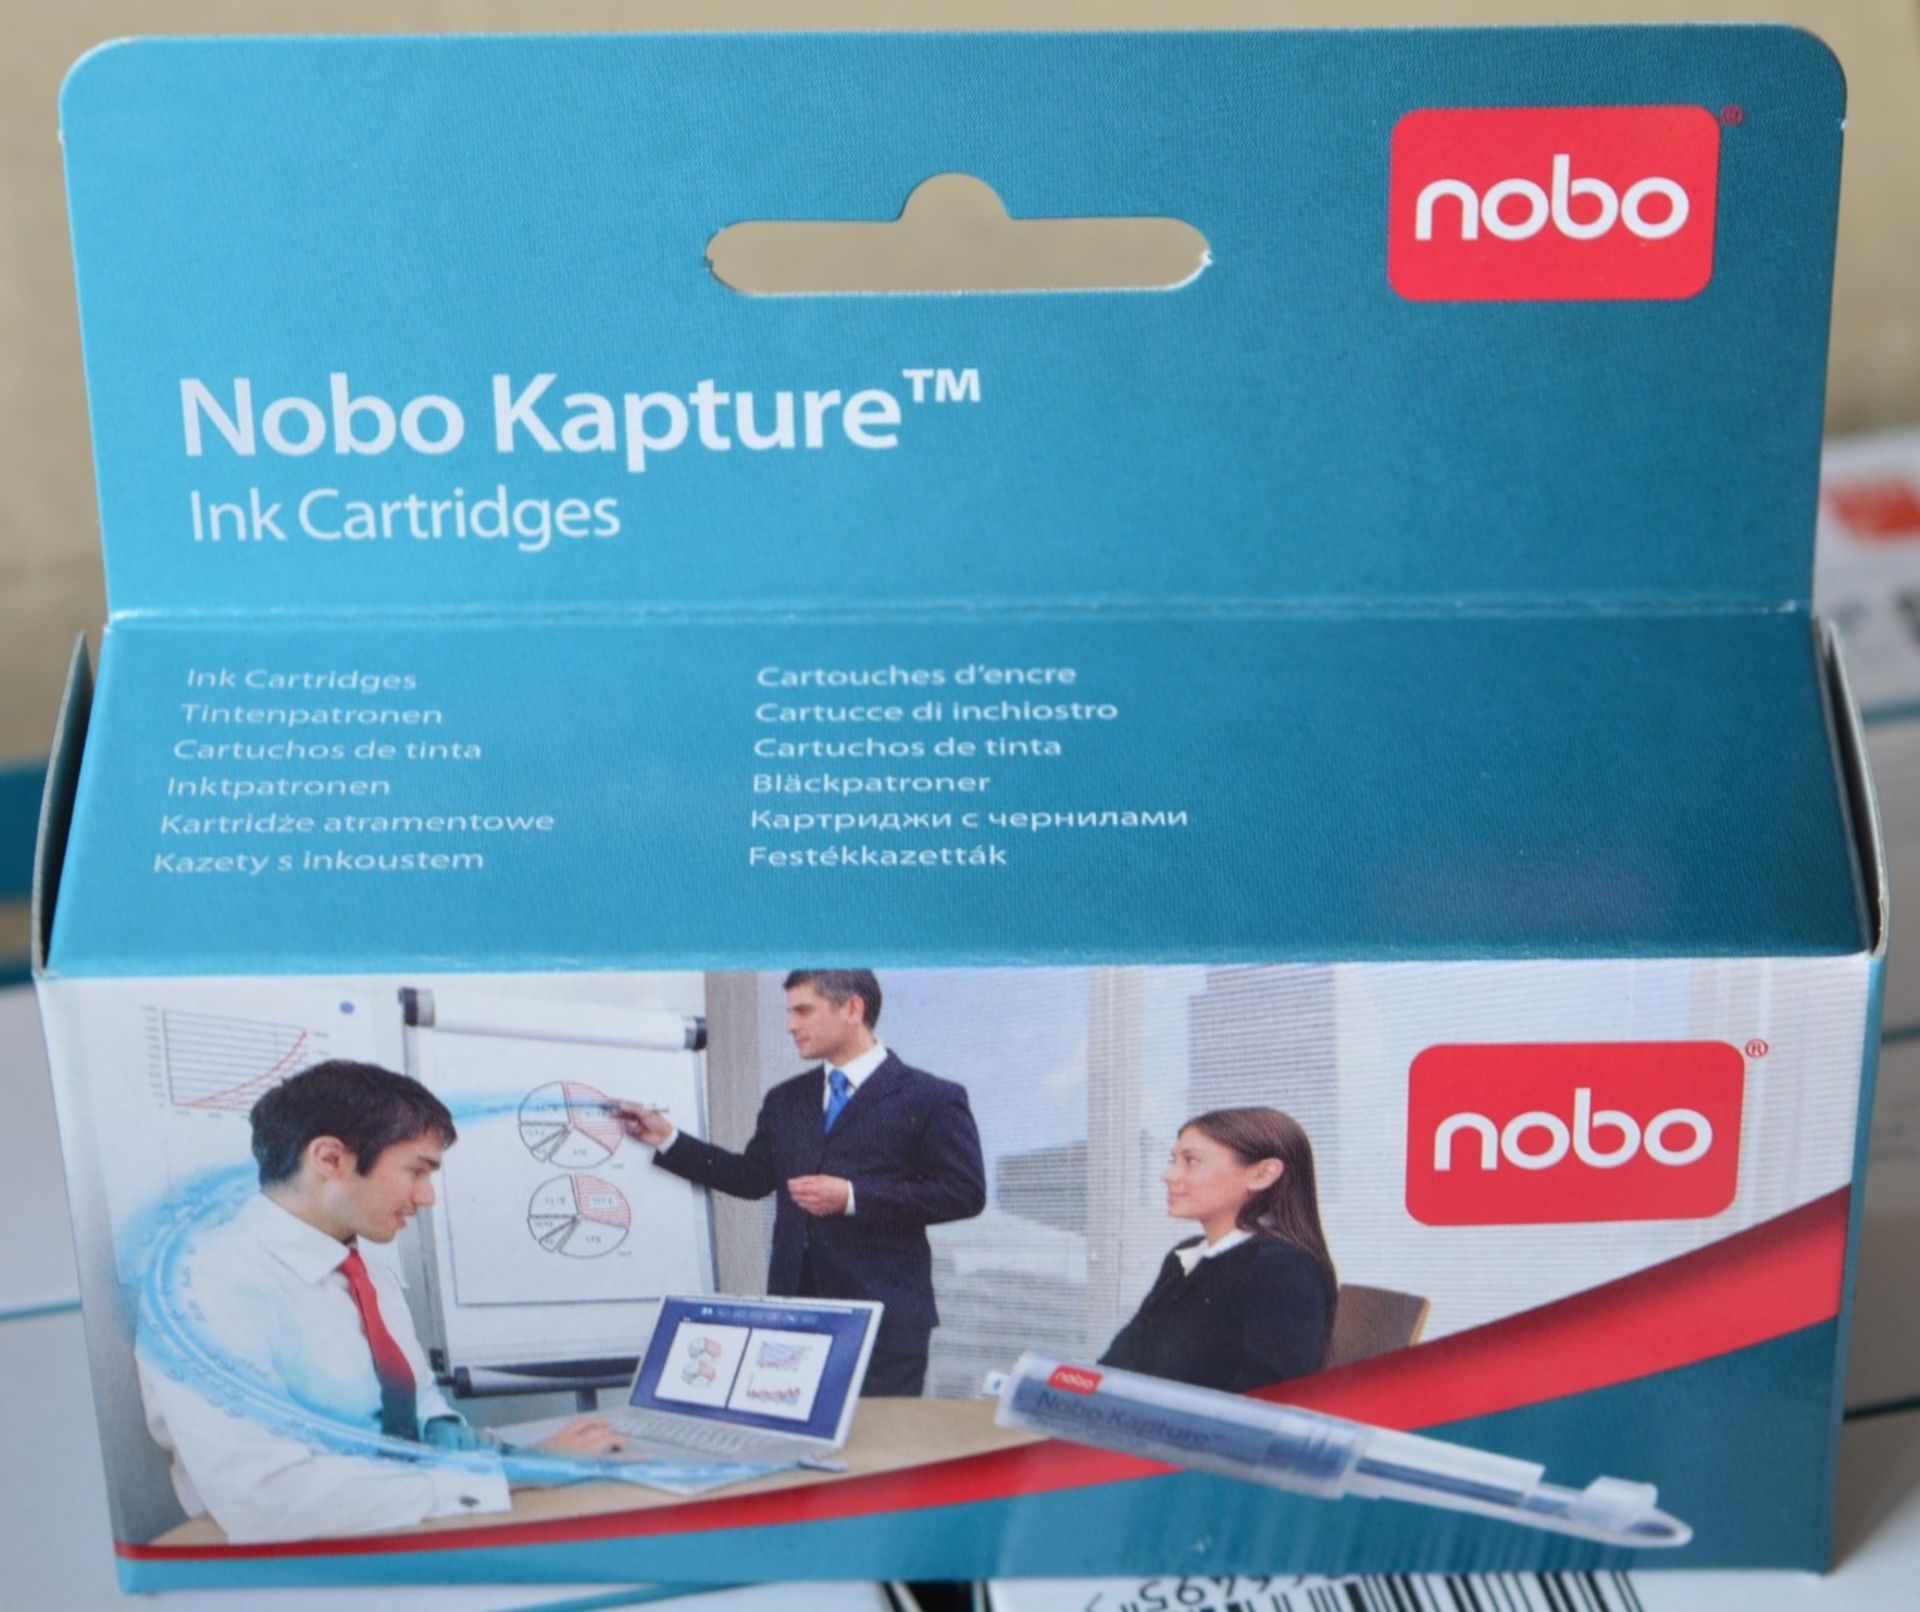 120 x Packs of Nobo Kapture Ink Cartridges - Includes 120 x Packs of 6 x Ink Cartridges - For Use - Image 10 of 11